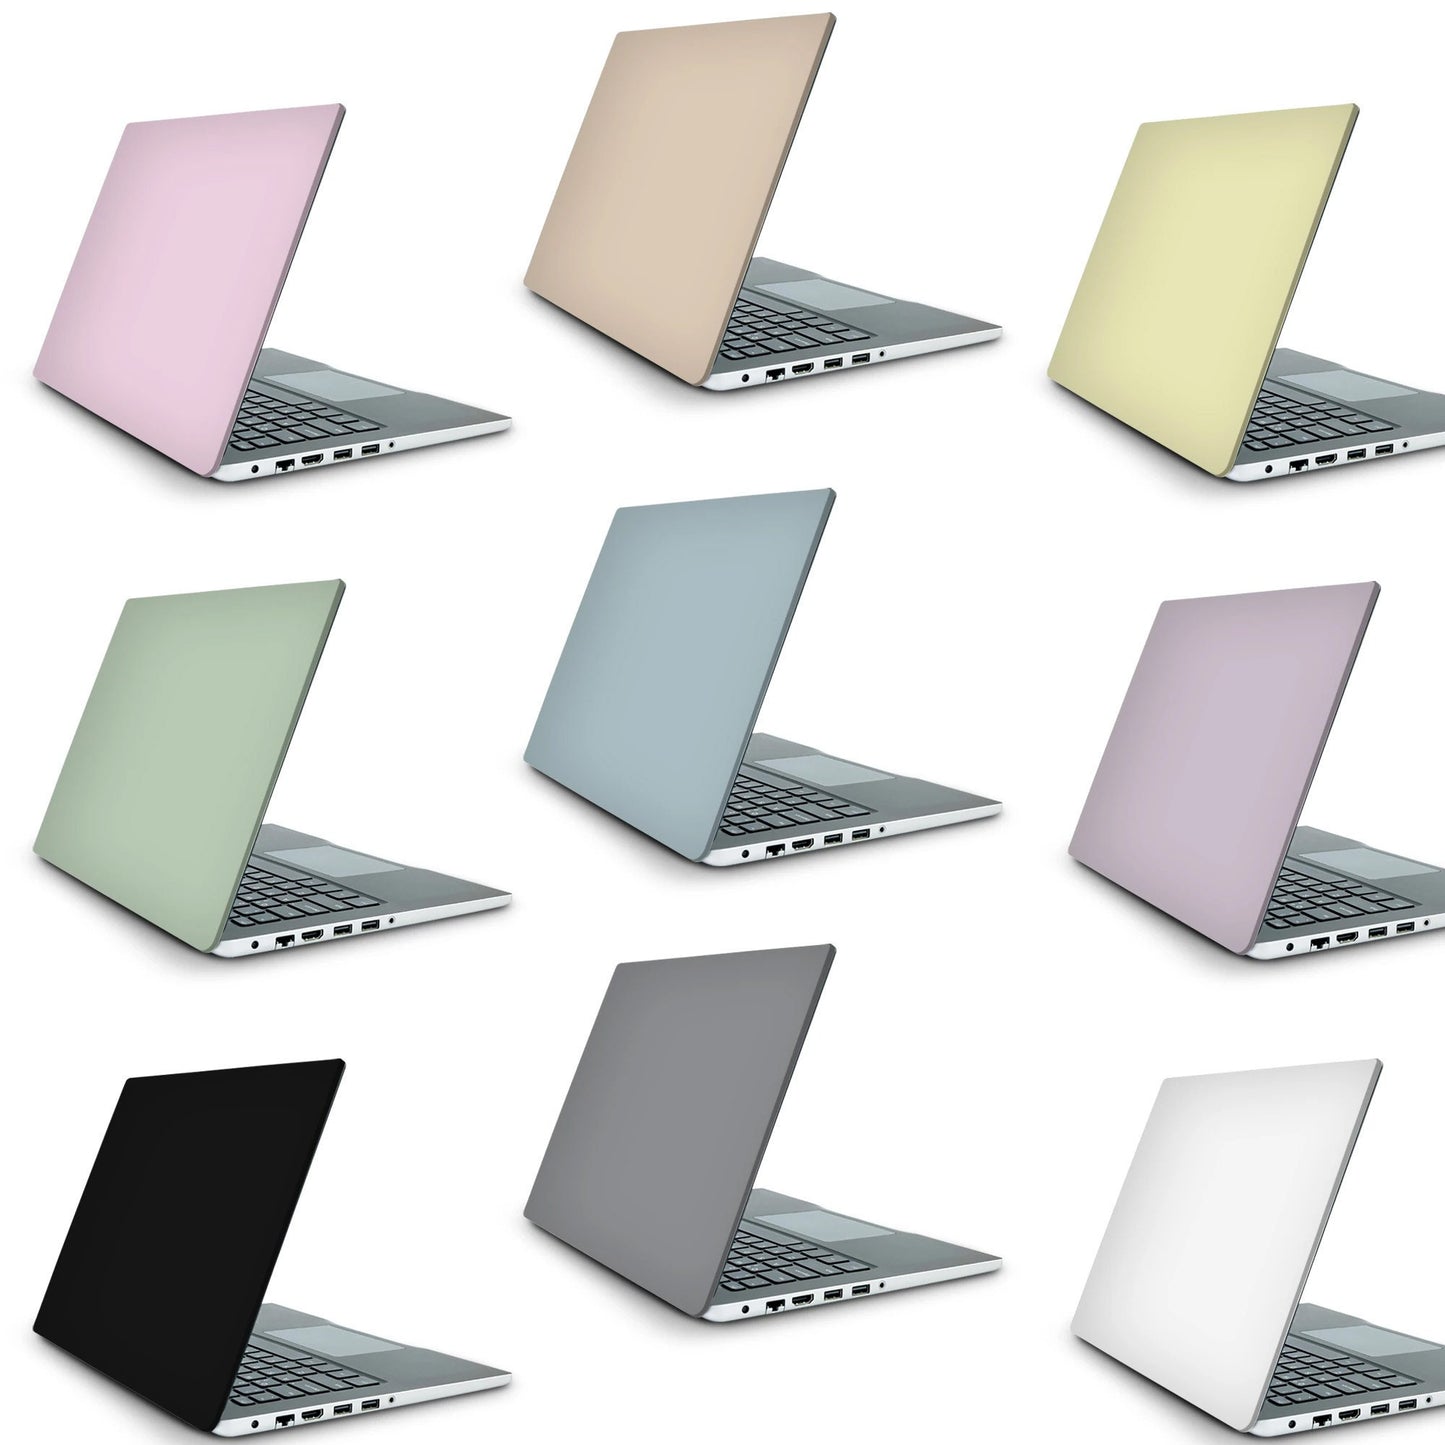 Terrazzo Laptop Skin, Laptop Cover, Laptop Skins, Removable Laptop Skins, Laptop Decal, Customized Laptop Skin, Laptop Stickers 160